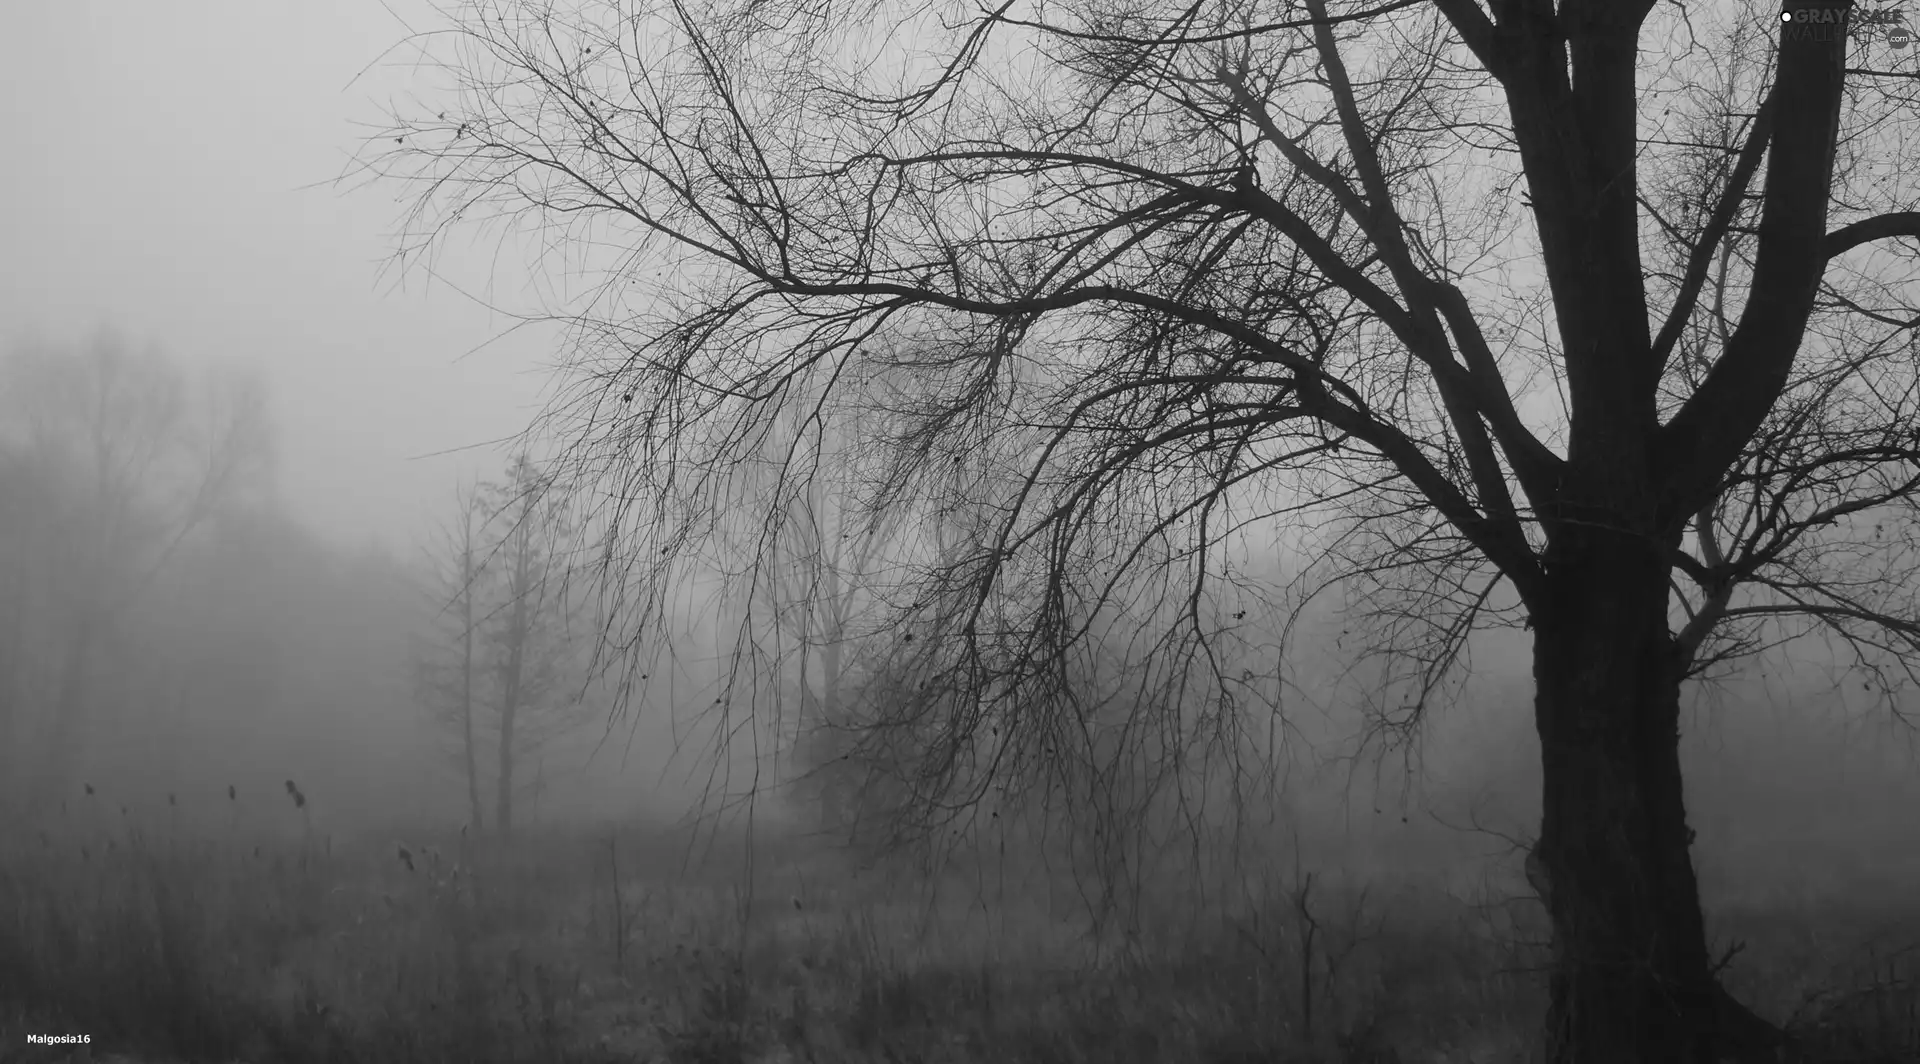 Fog, trees